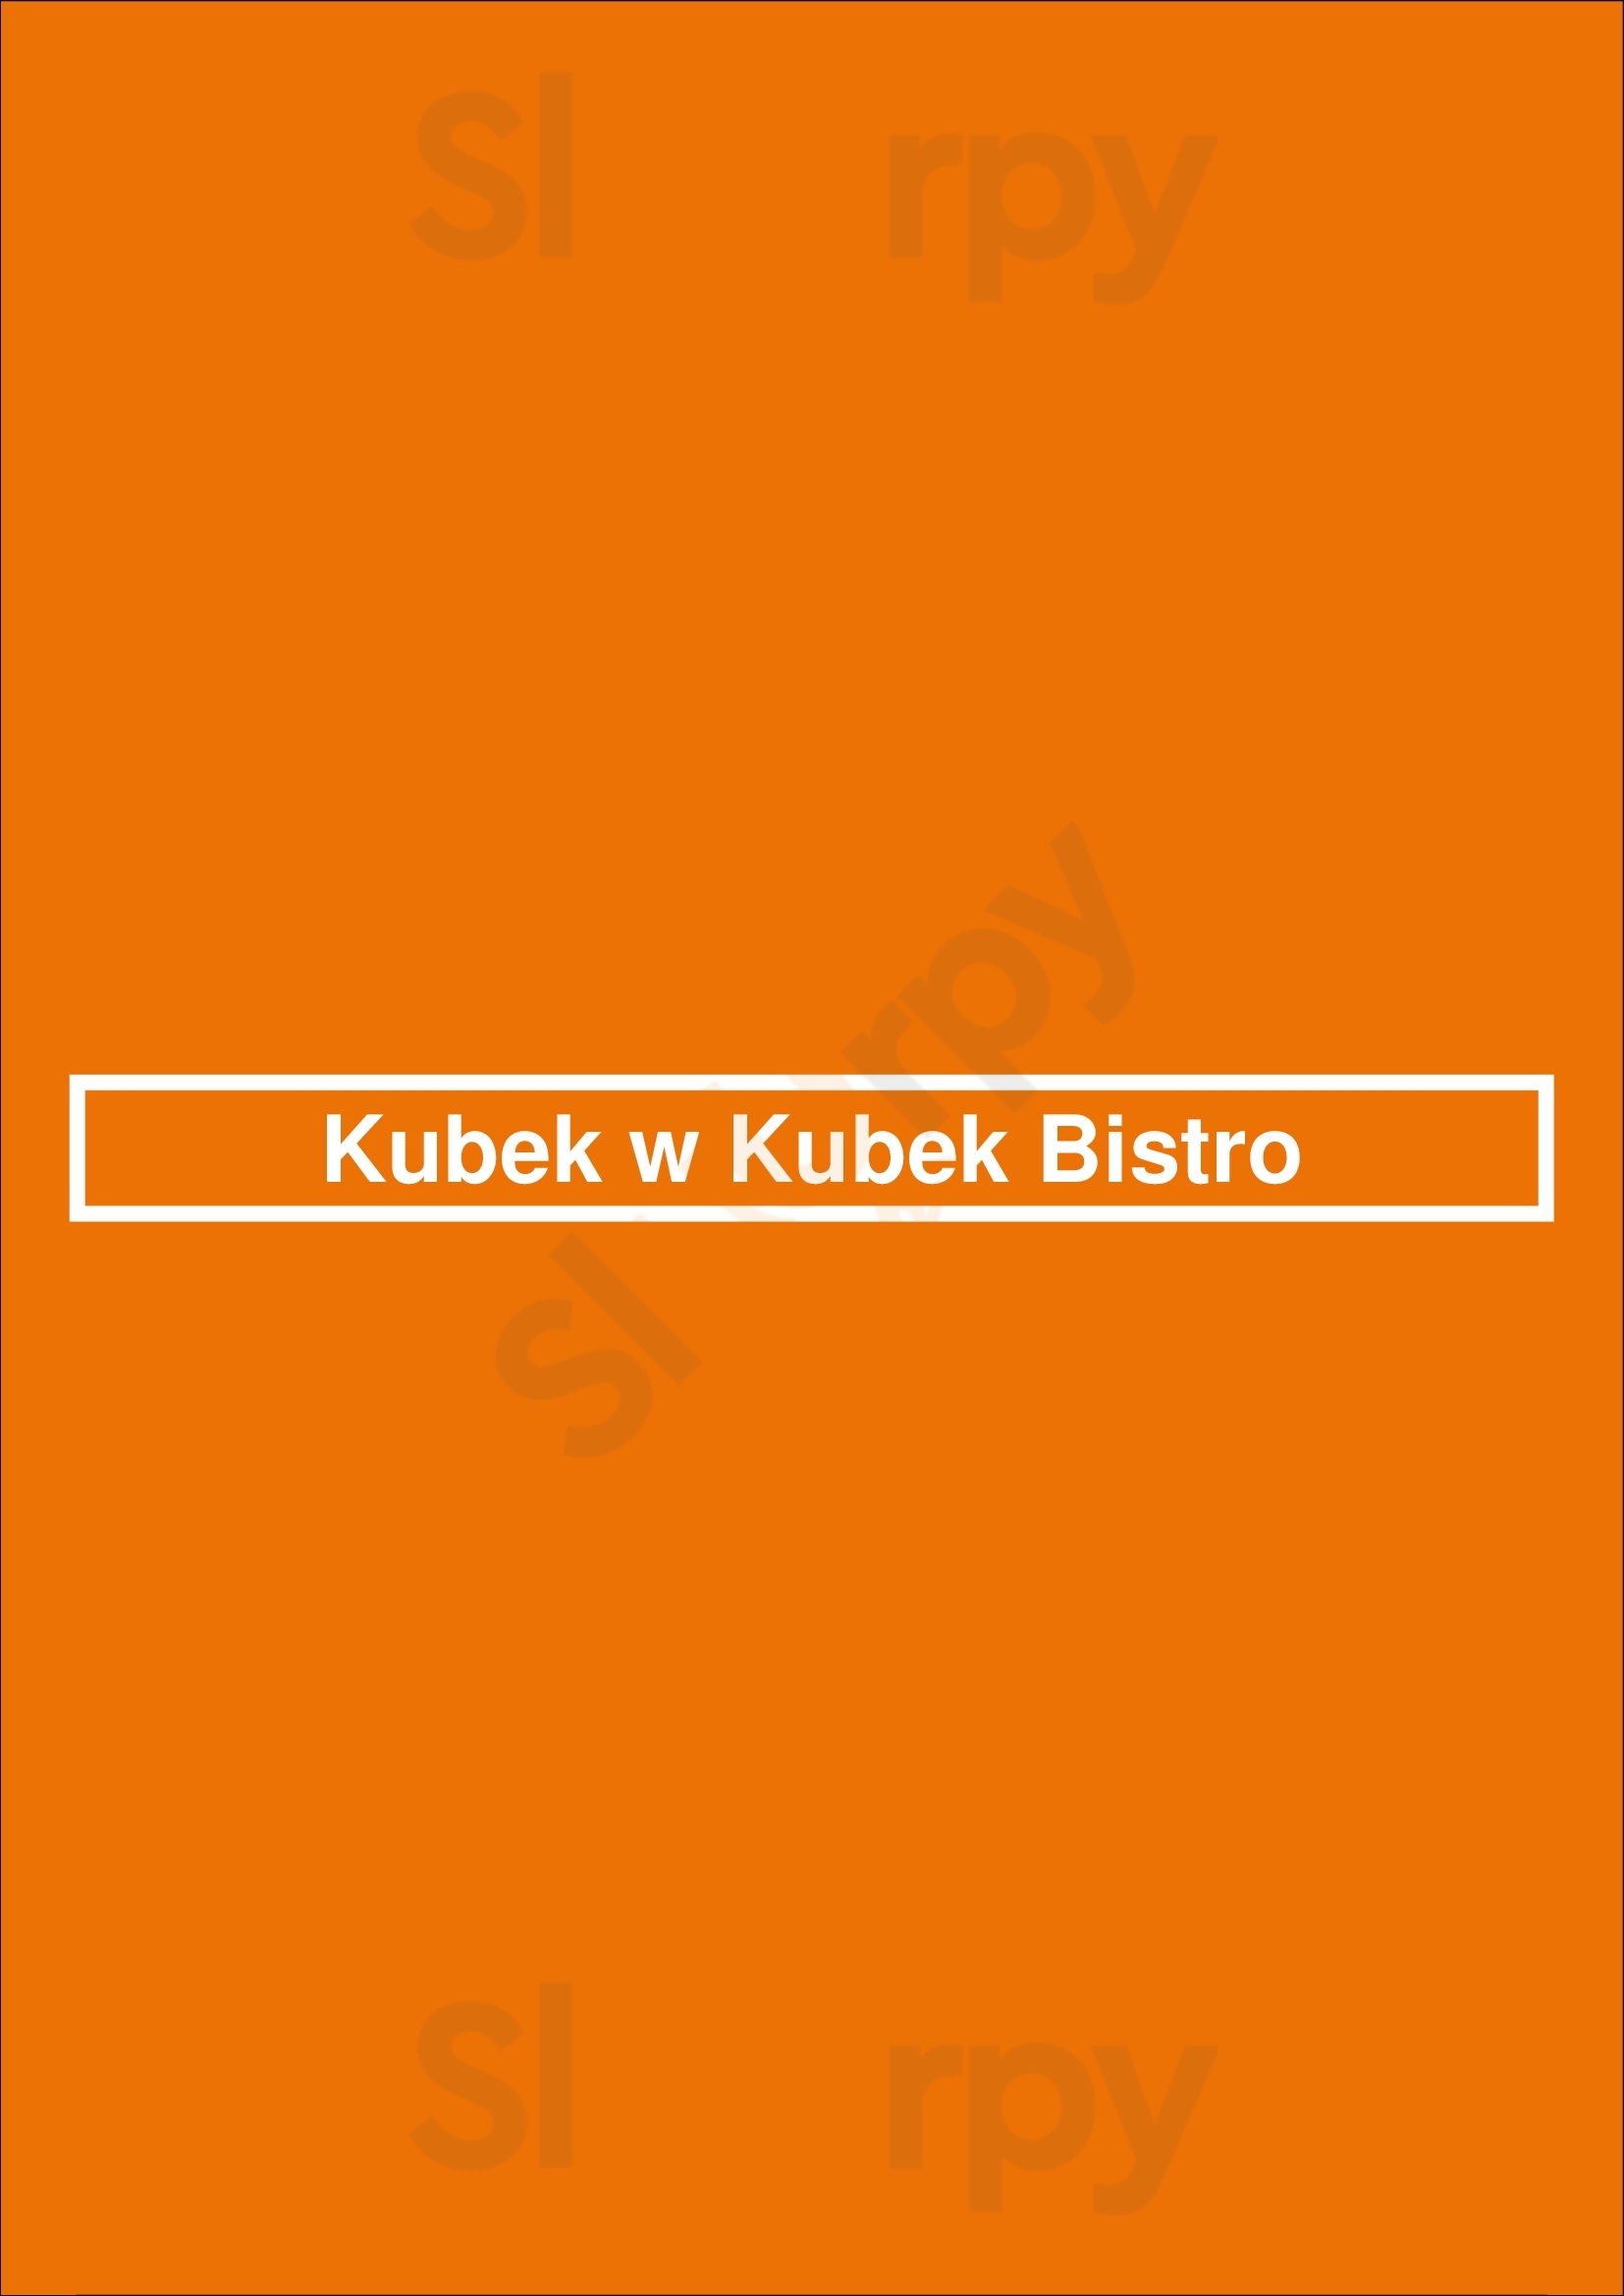 Kubek W Kubek Bistro Warszawa Menu - 1